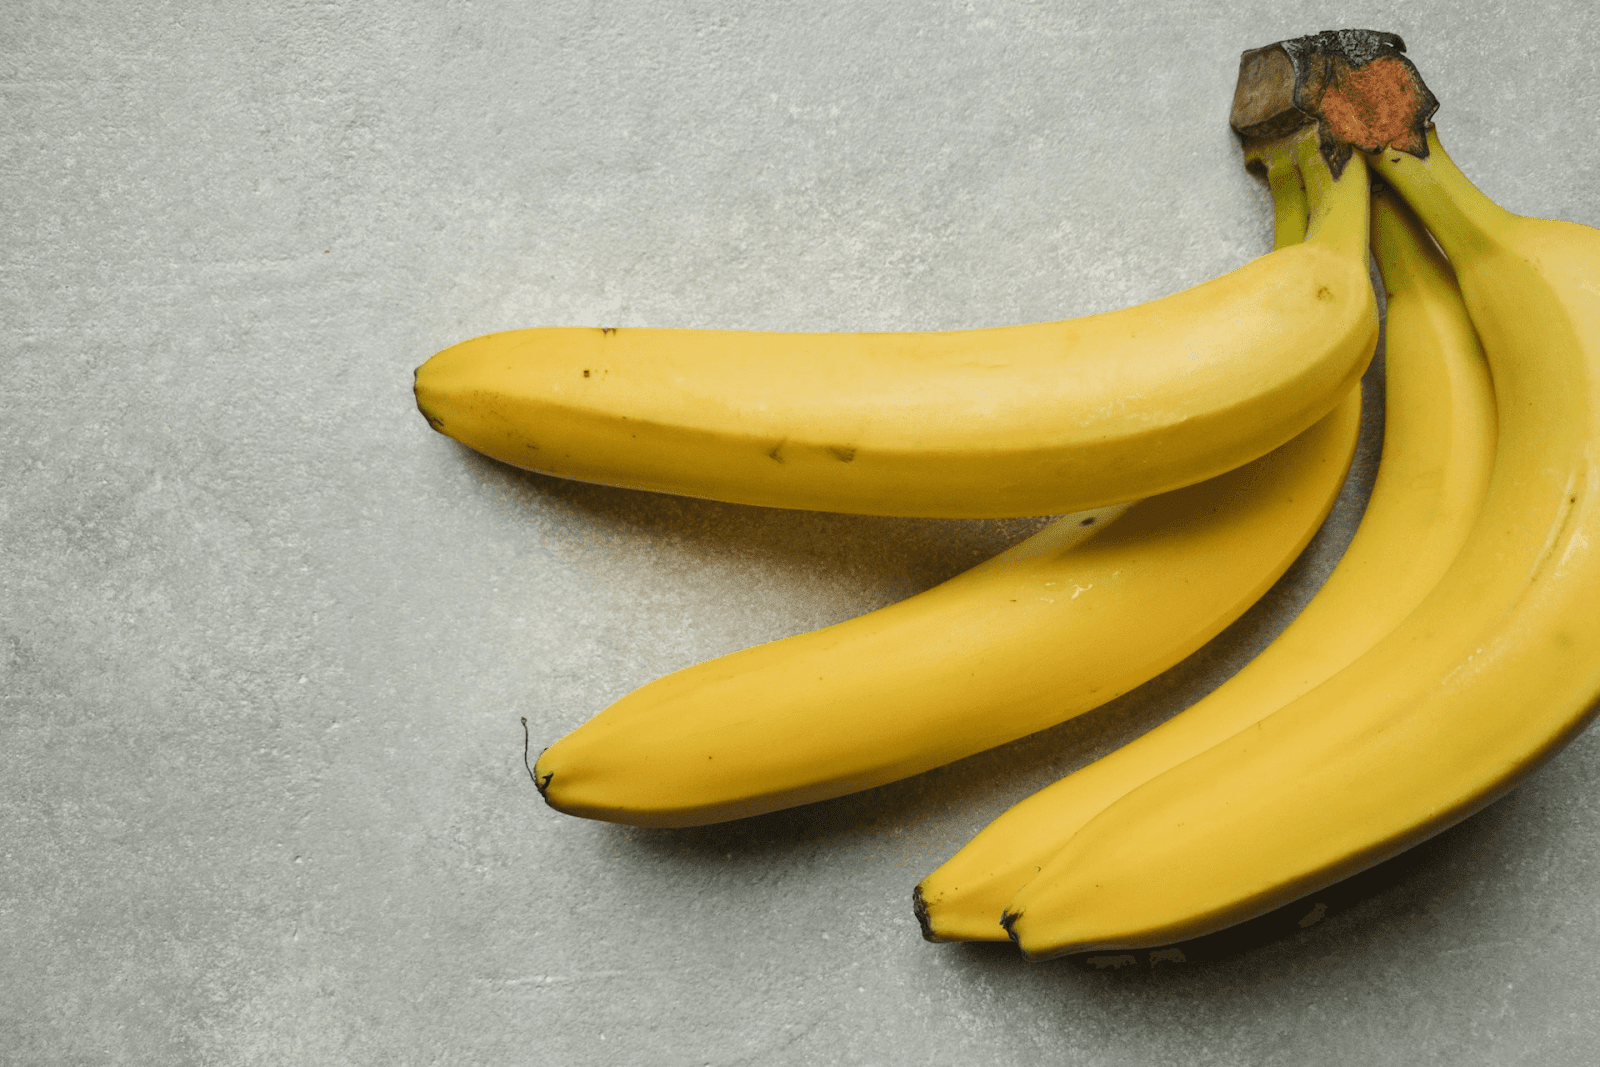 calories in a banana - four pieces of banana